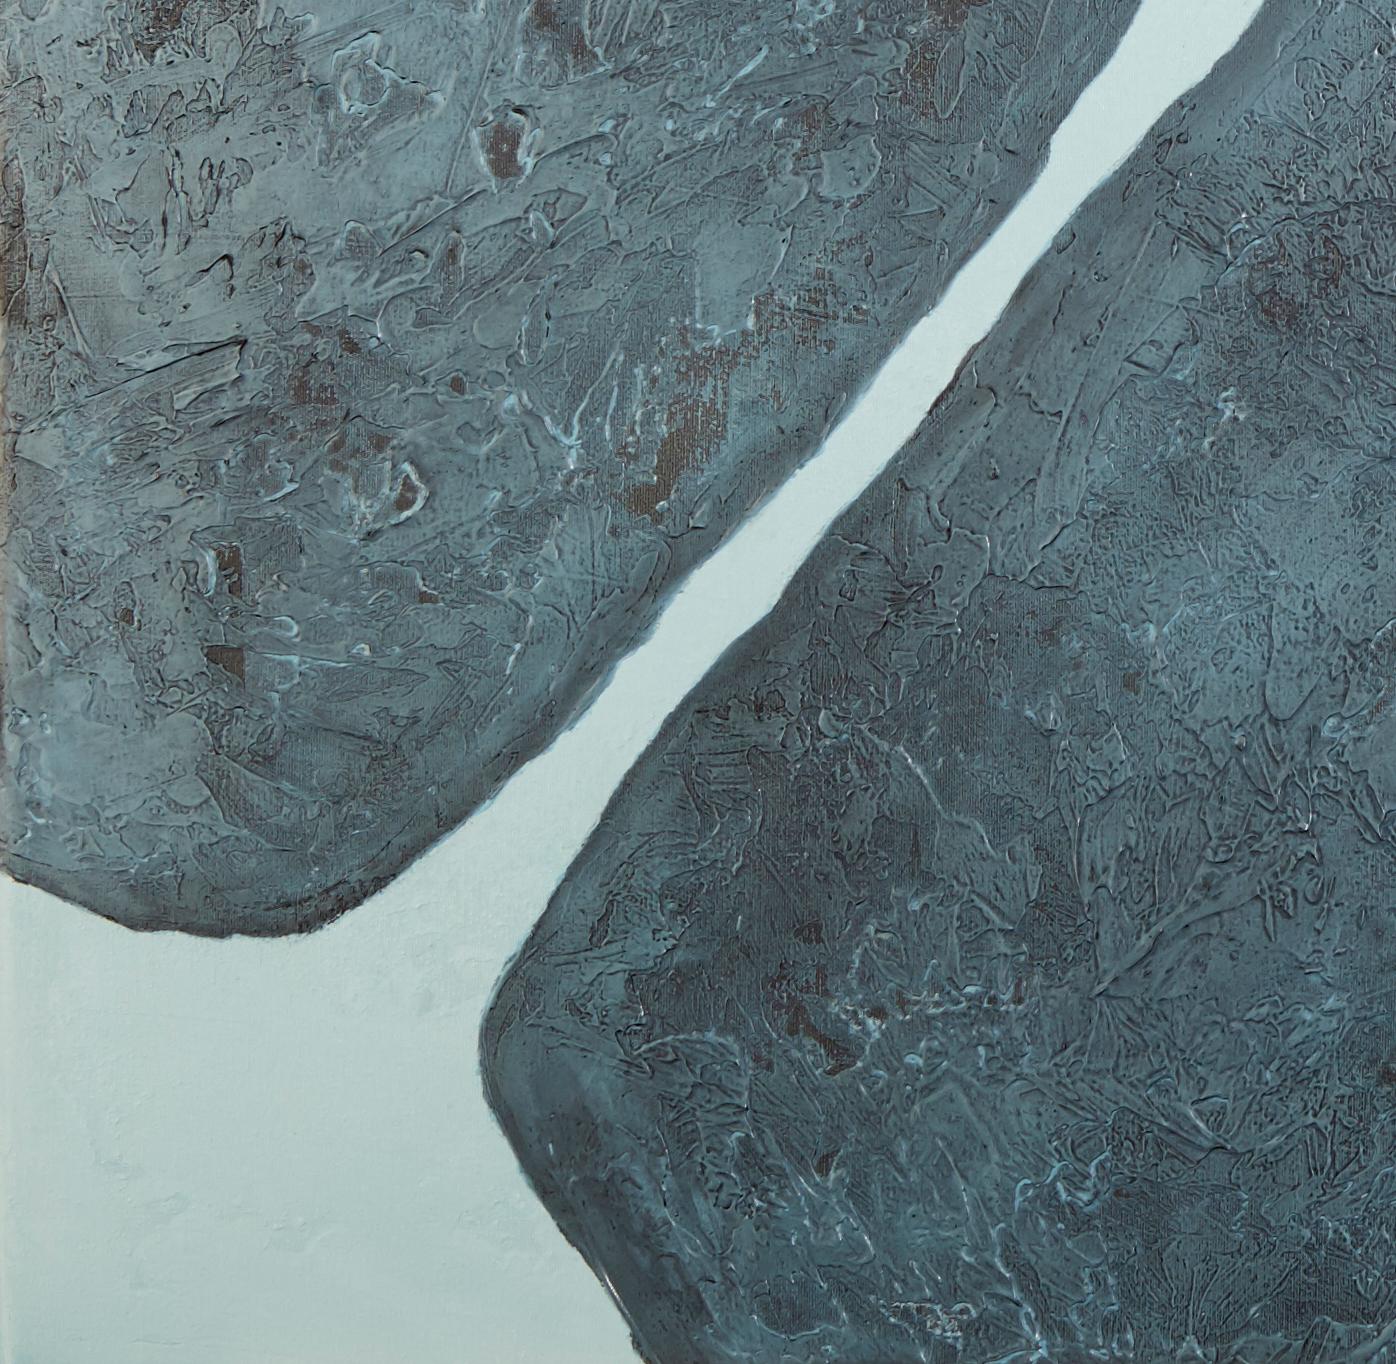 Steine XVIII - 21. Jahrhundert, Zeitgenössisch, Abstrakte Malerei, Mixed Media – Painting von Jon Errazu